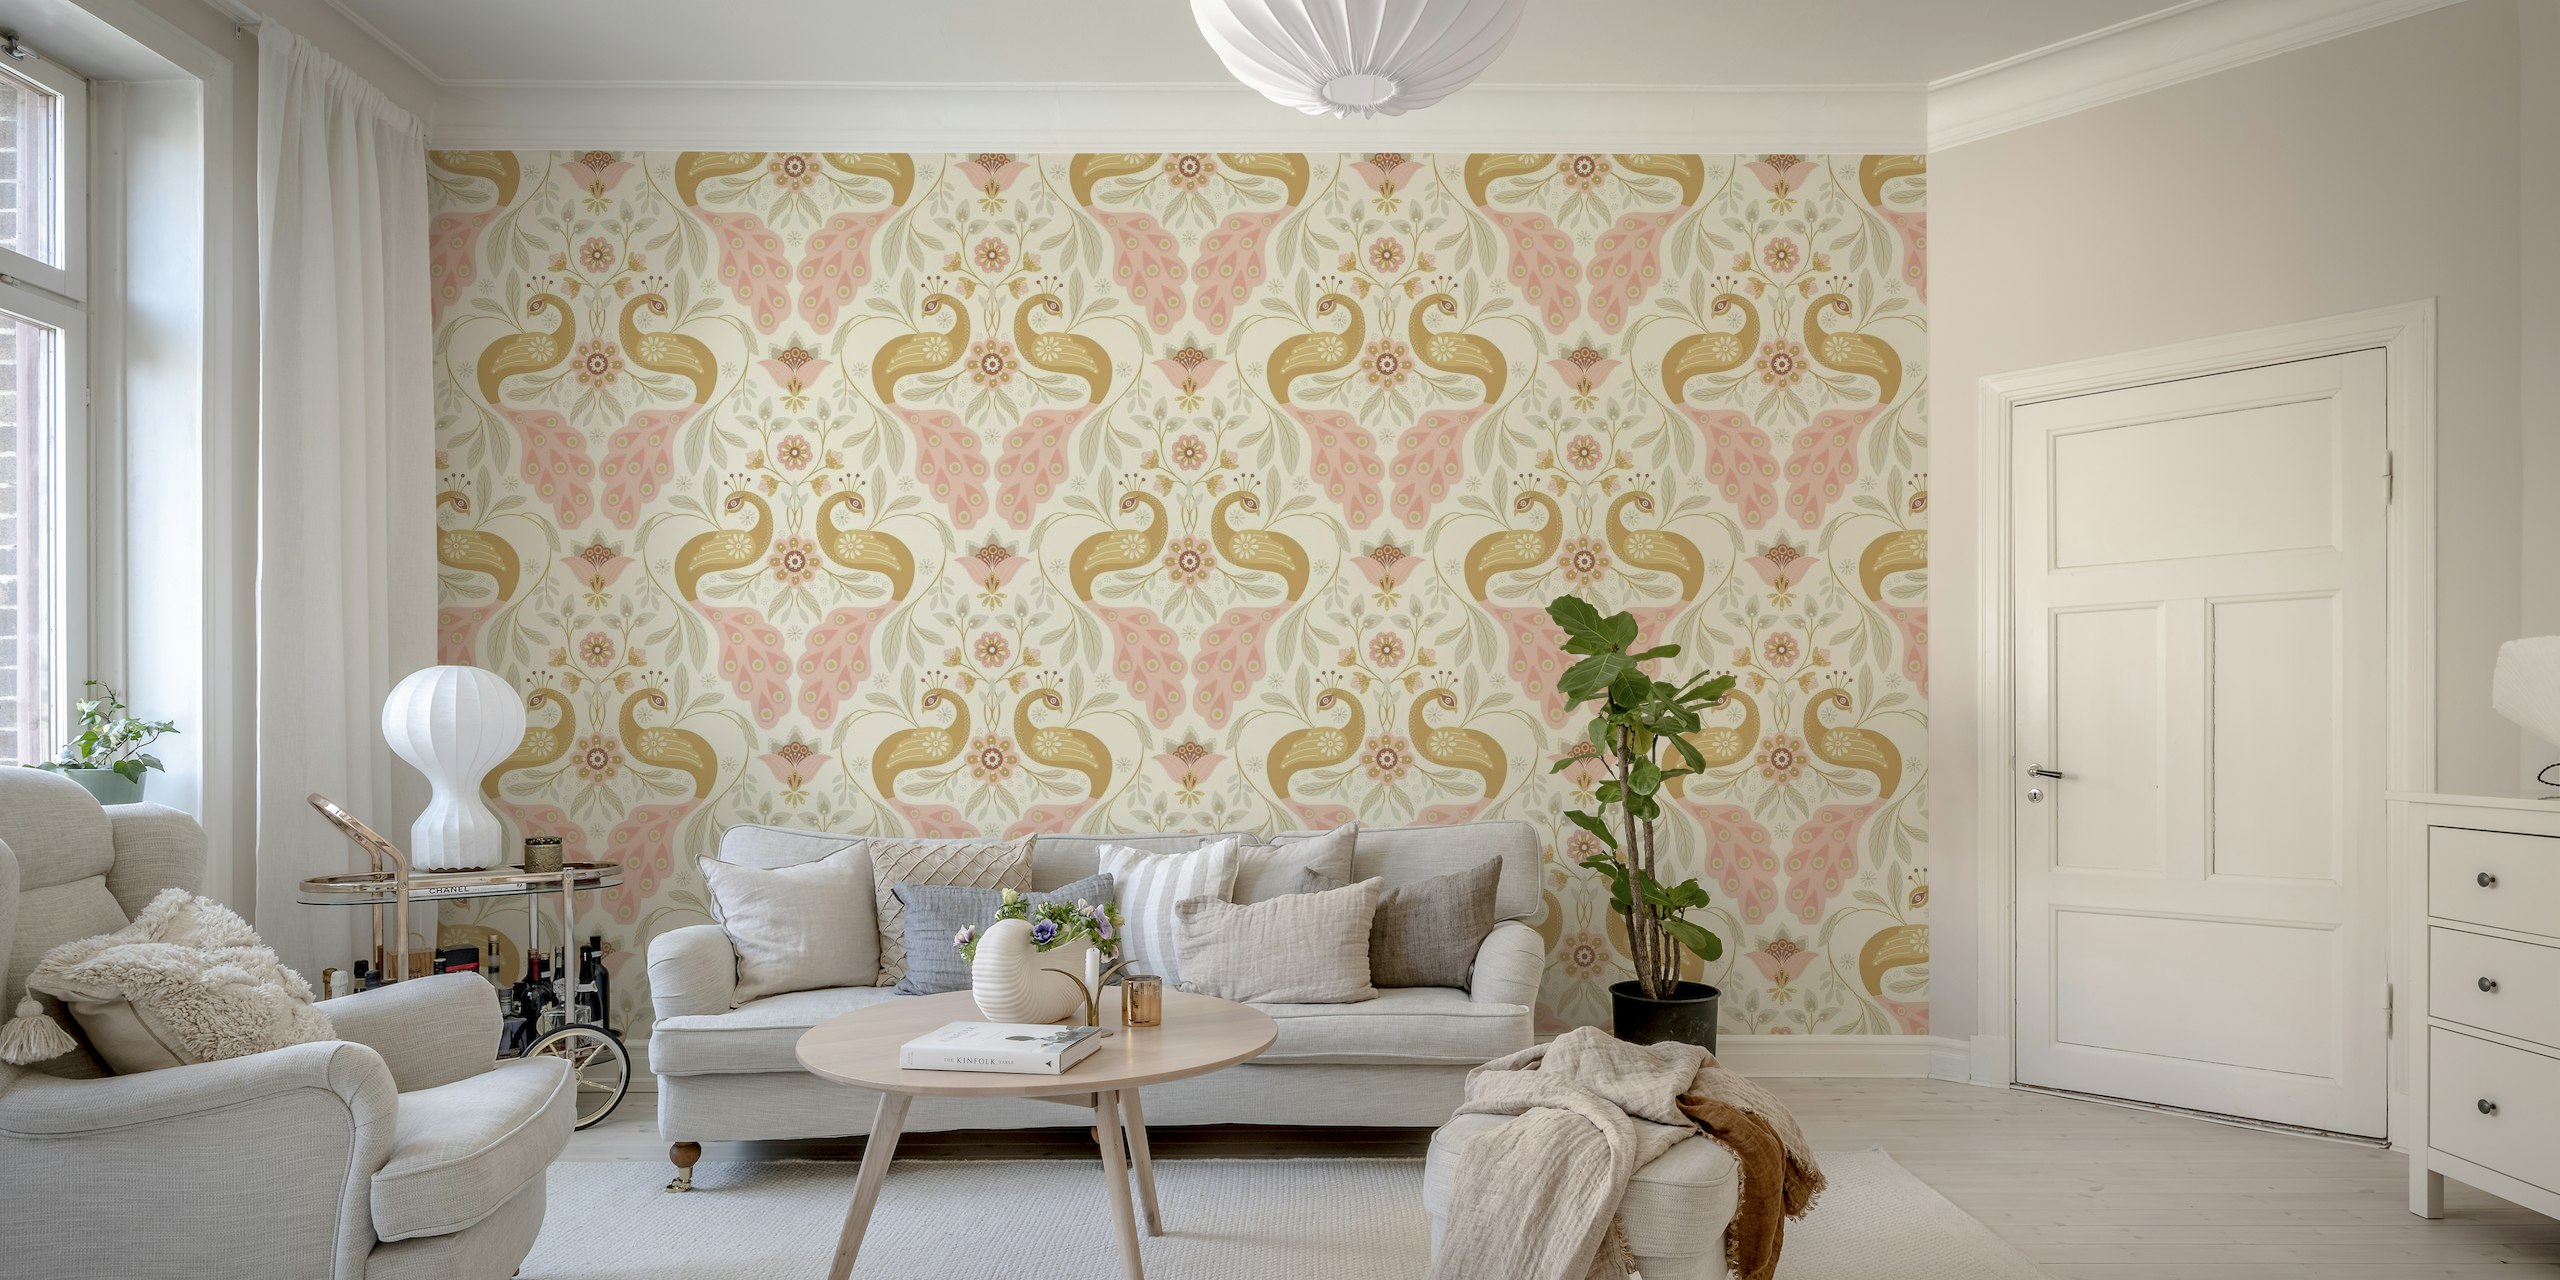 Pastelová fototapeta páv s elegantním designem pro domácí dekoraci.